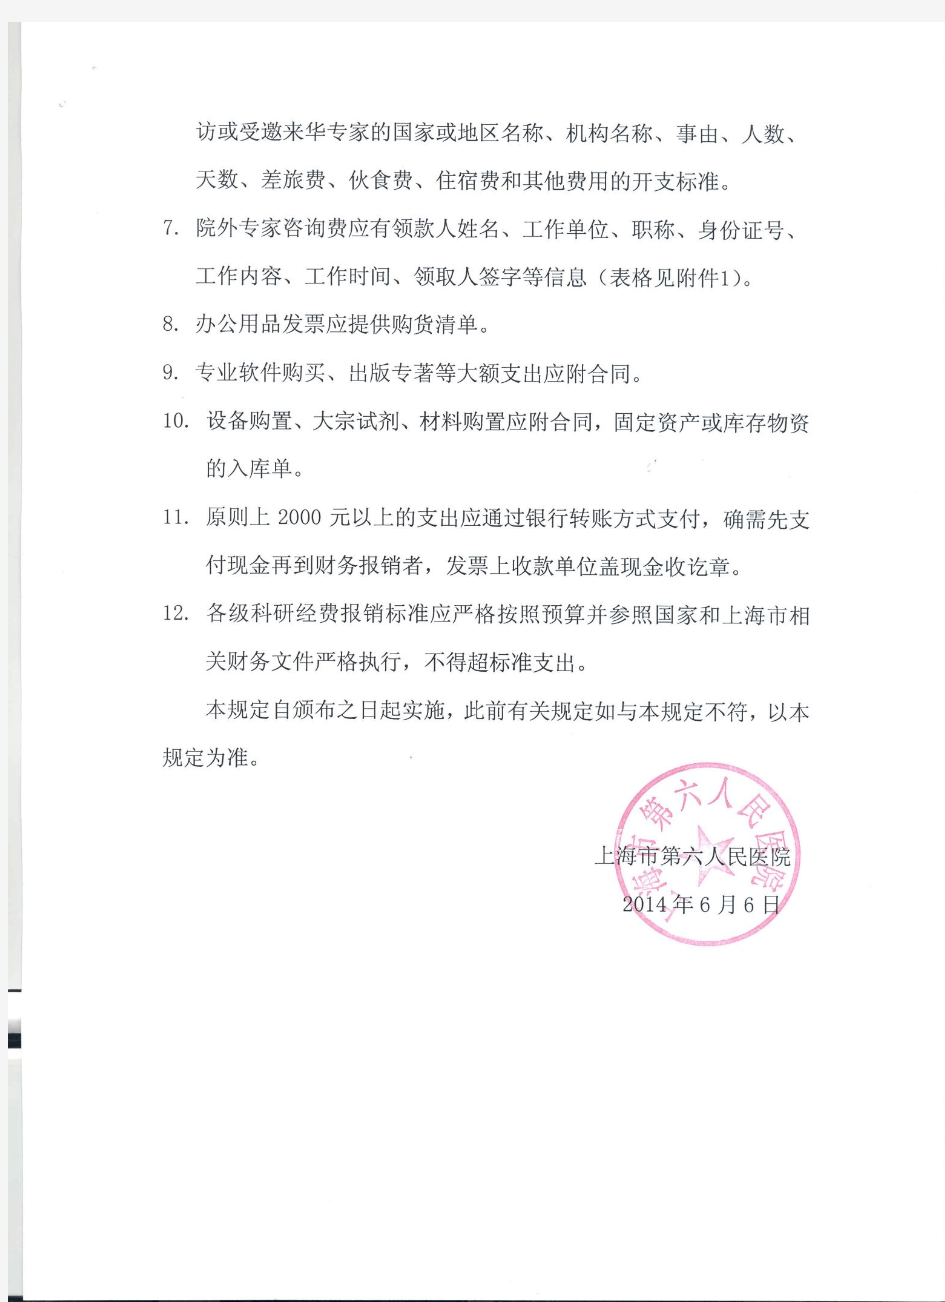 上海市第六人民医院科研经费报销的相关规定